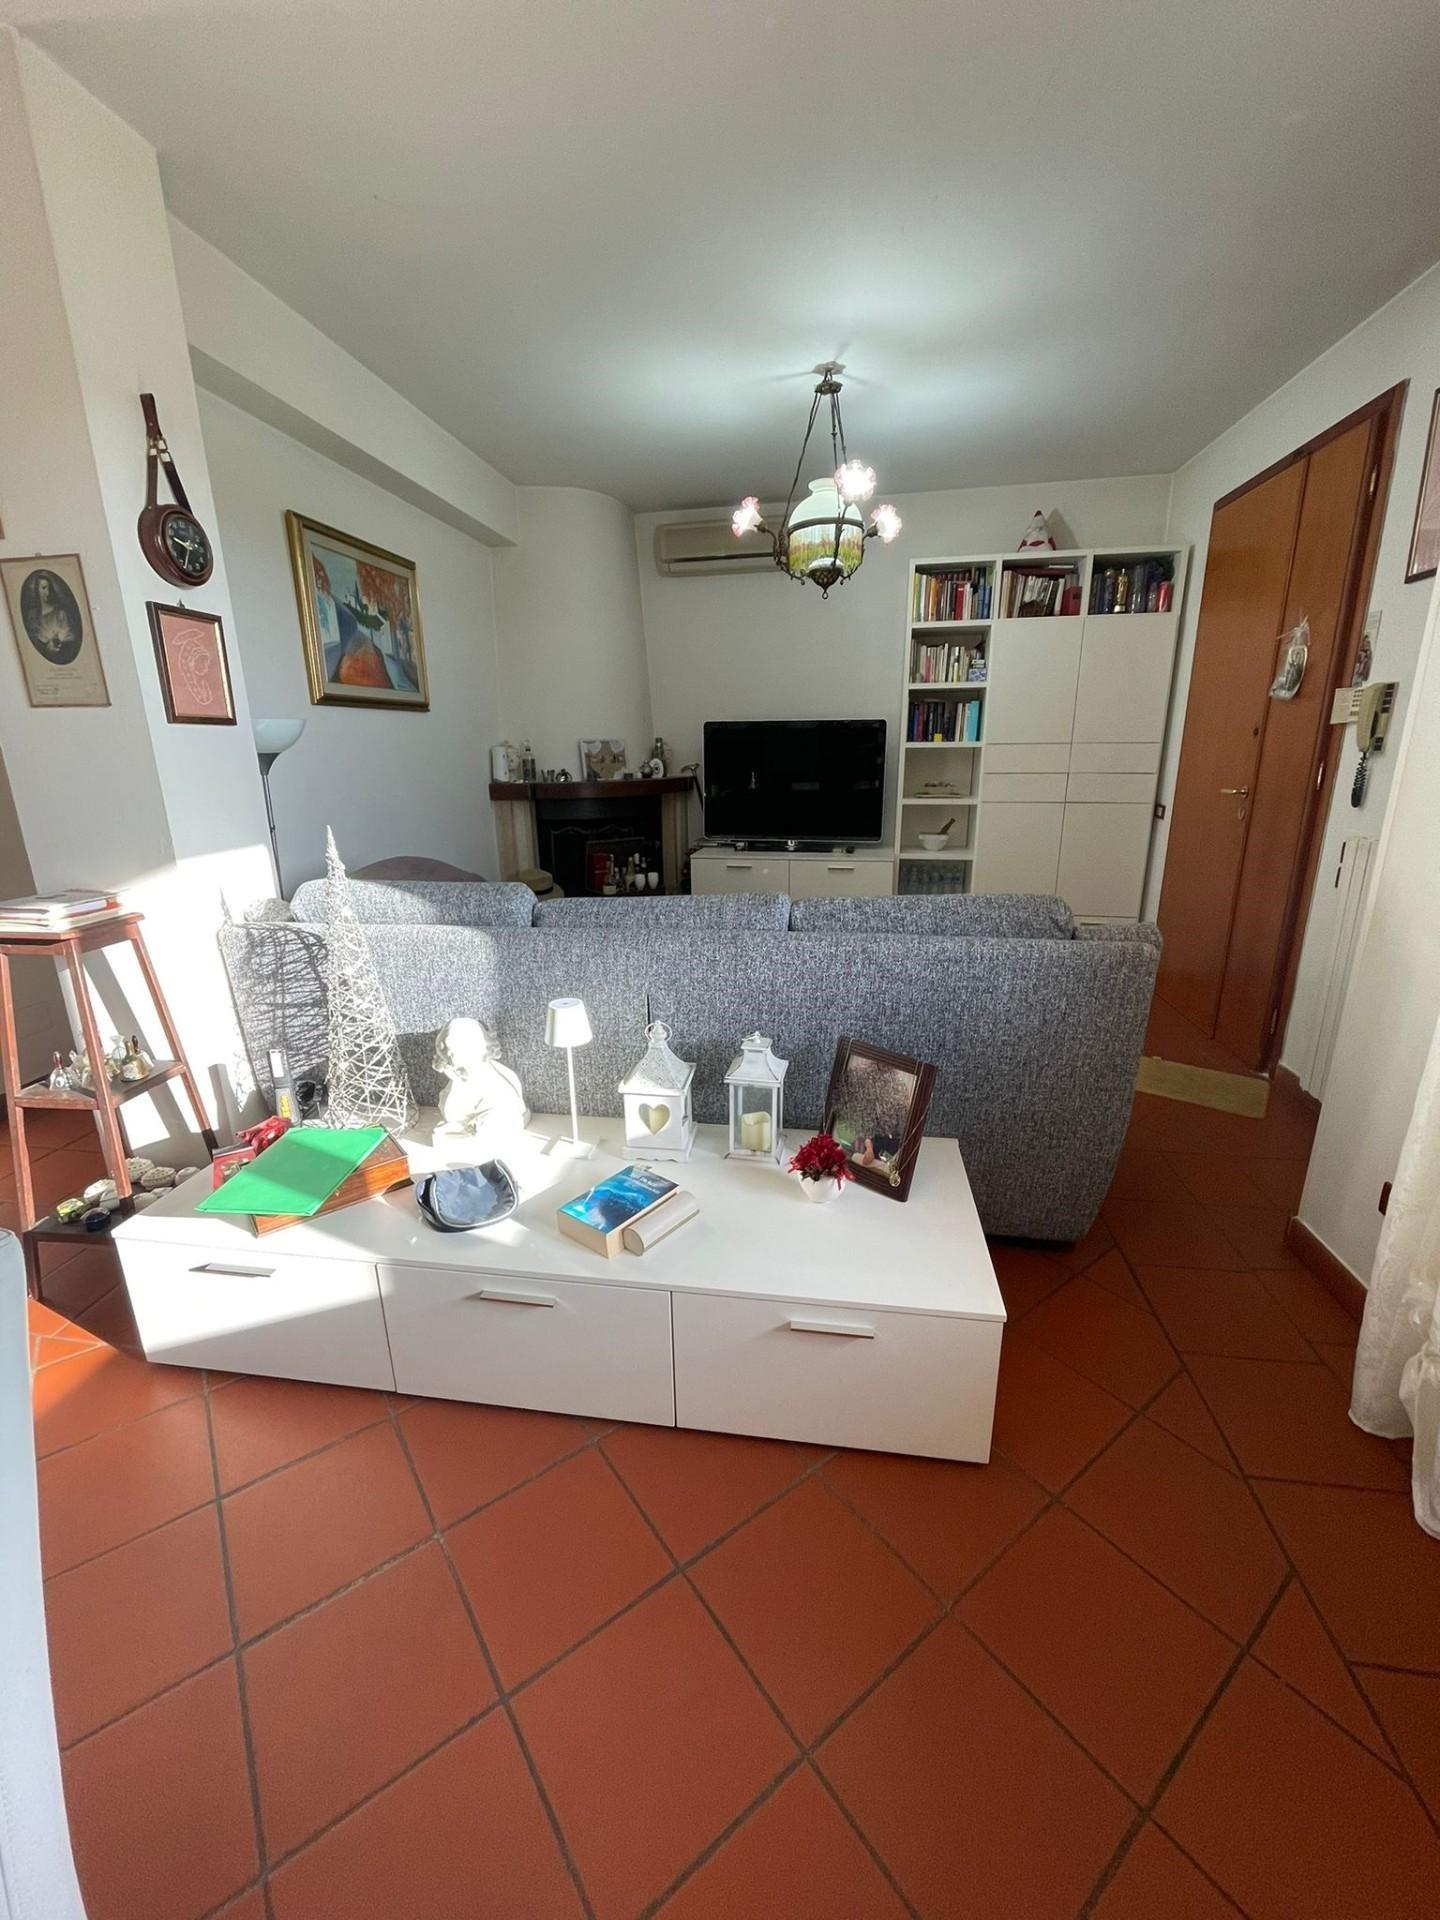 Villa in vendita a Casciana Terme Lari, 6 locali, prezzo € 317.000 | PortaleAgenzieImmobiliari.it